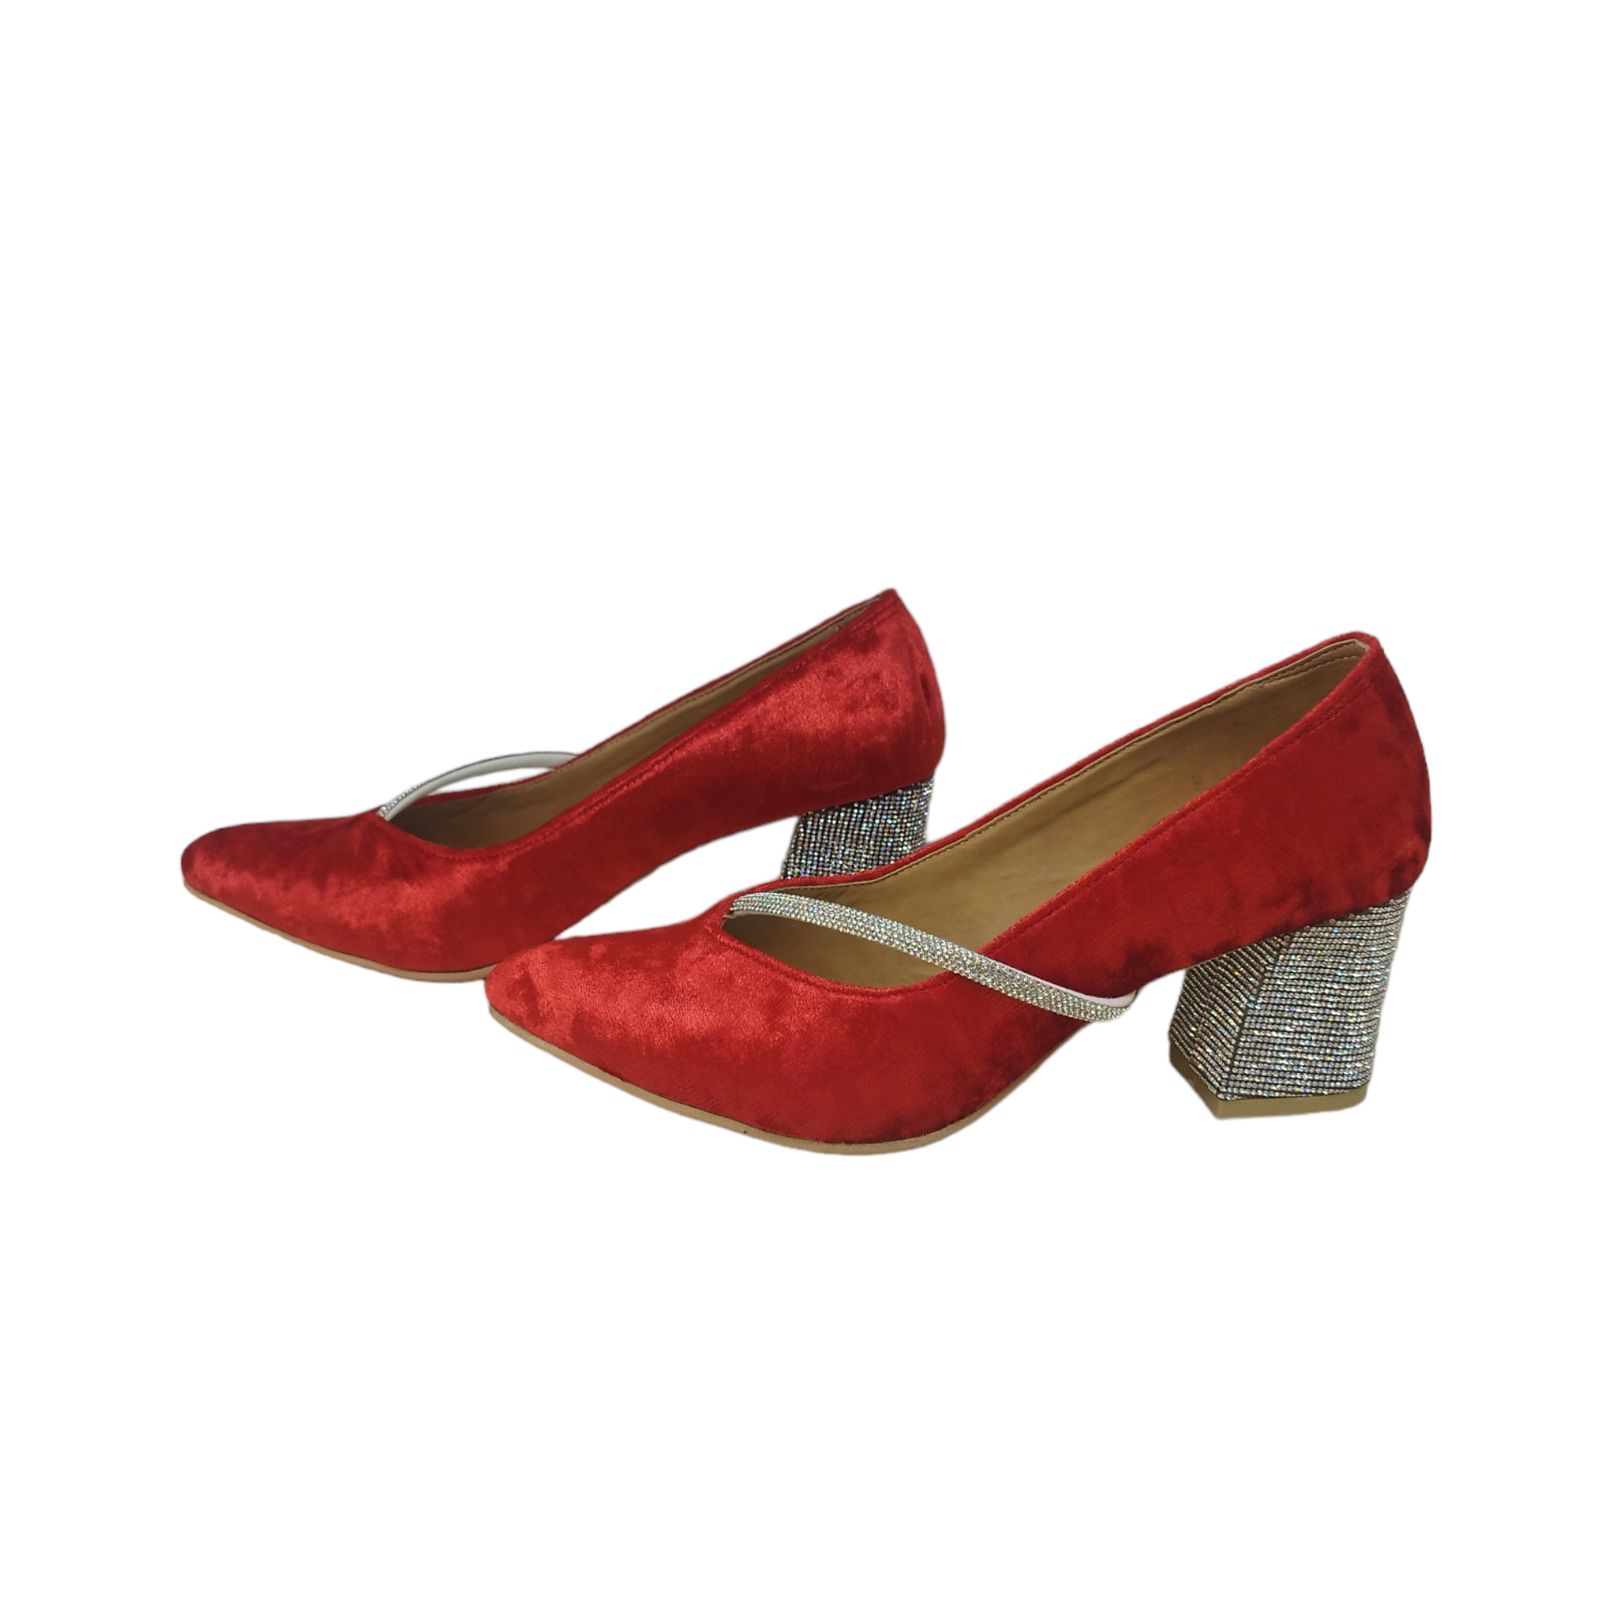 کفش زنانه مدل ZPOM 06 مخمل نگین دار رنگ قرمز -  - 5